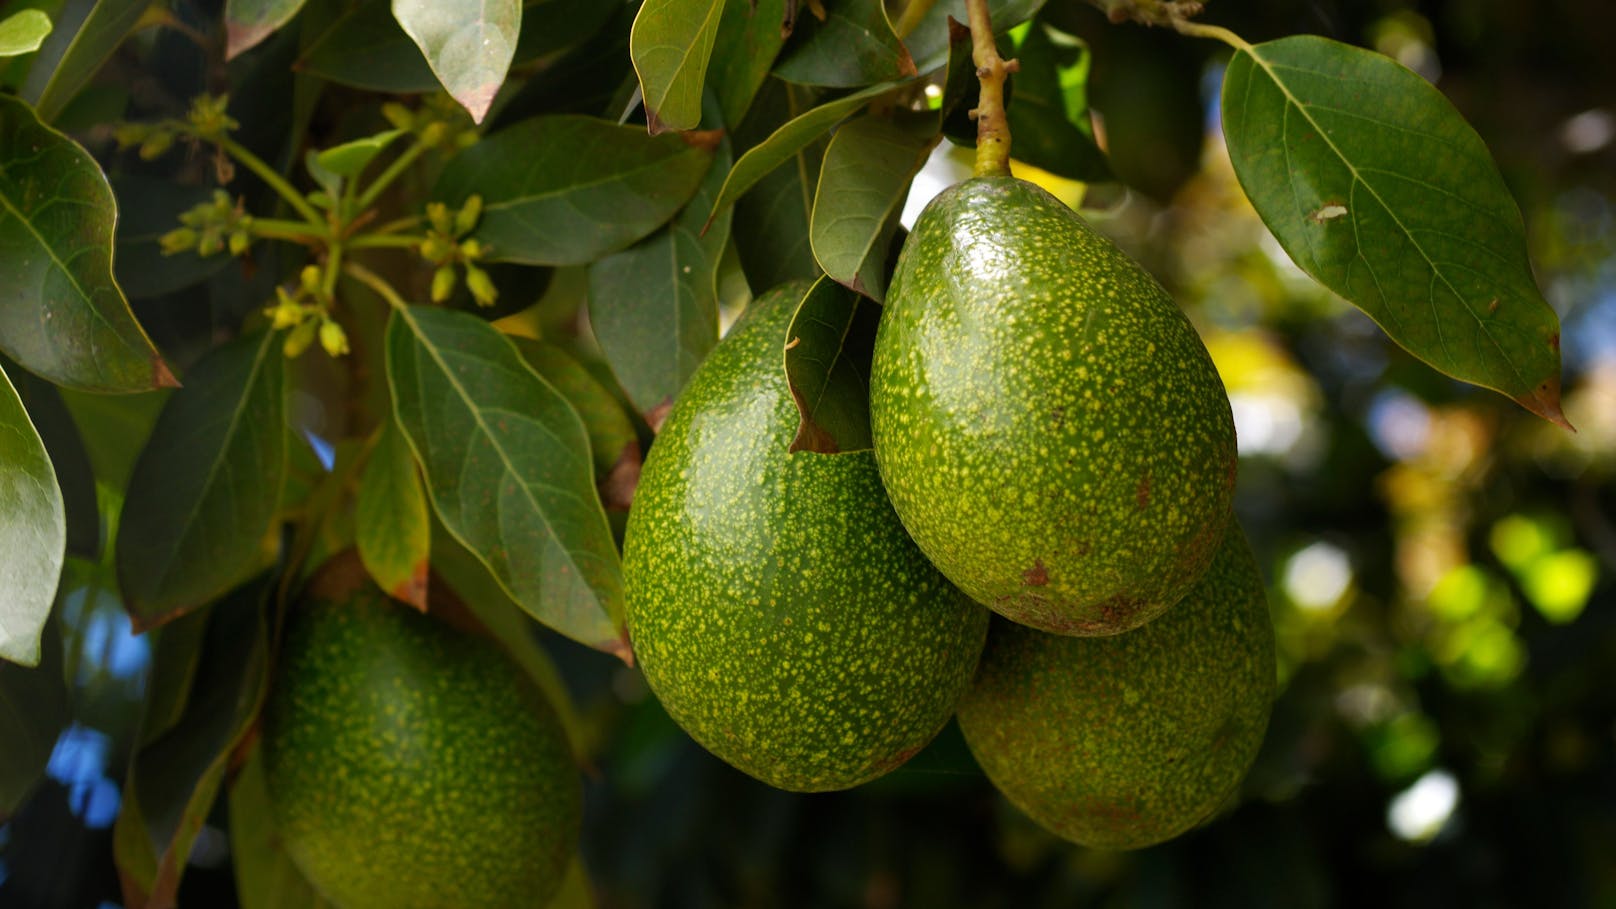 Die "Avocado" hat ihren Namen aus der aztekischen Sprache Nahuatl - und bedeutet übersetzt "Hoden".